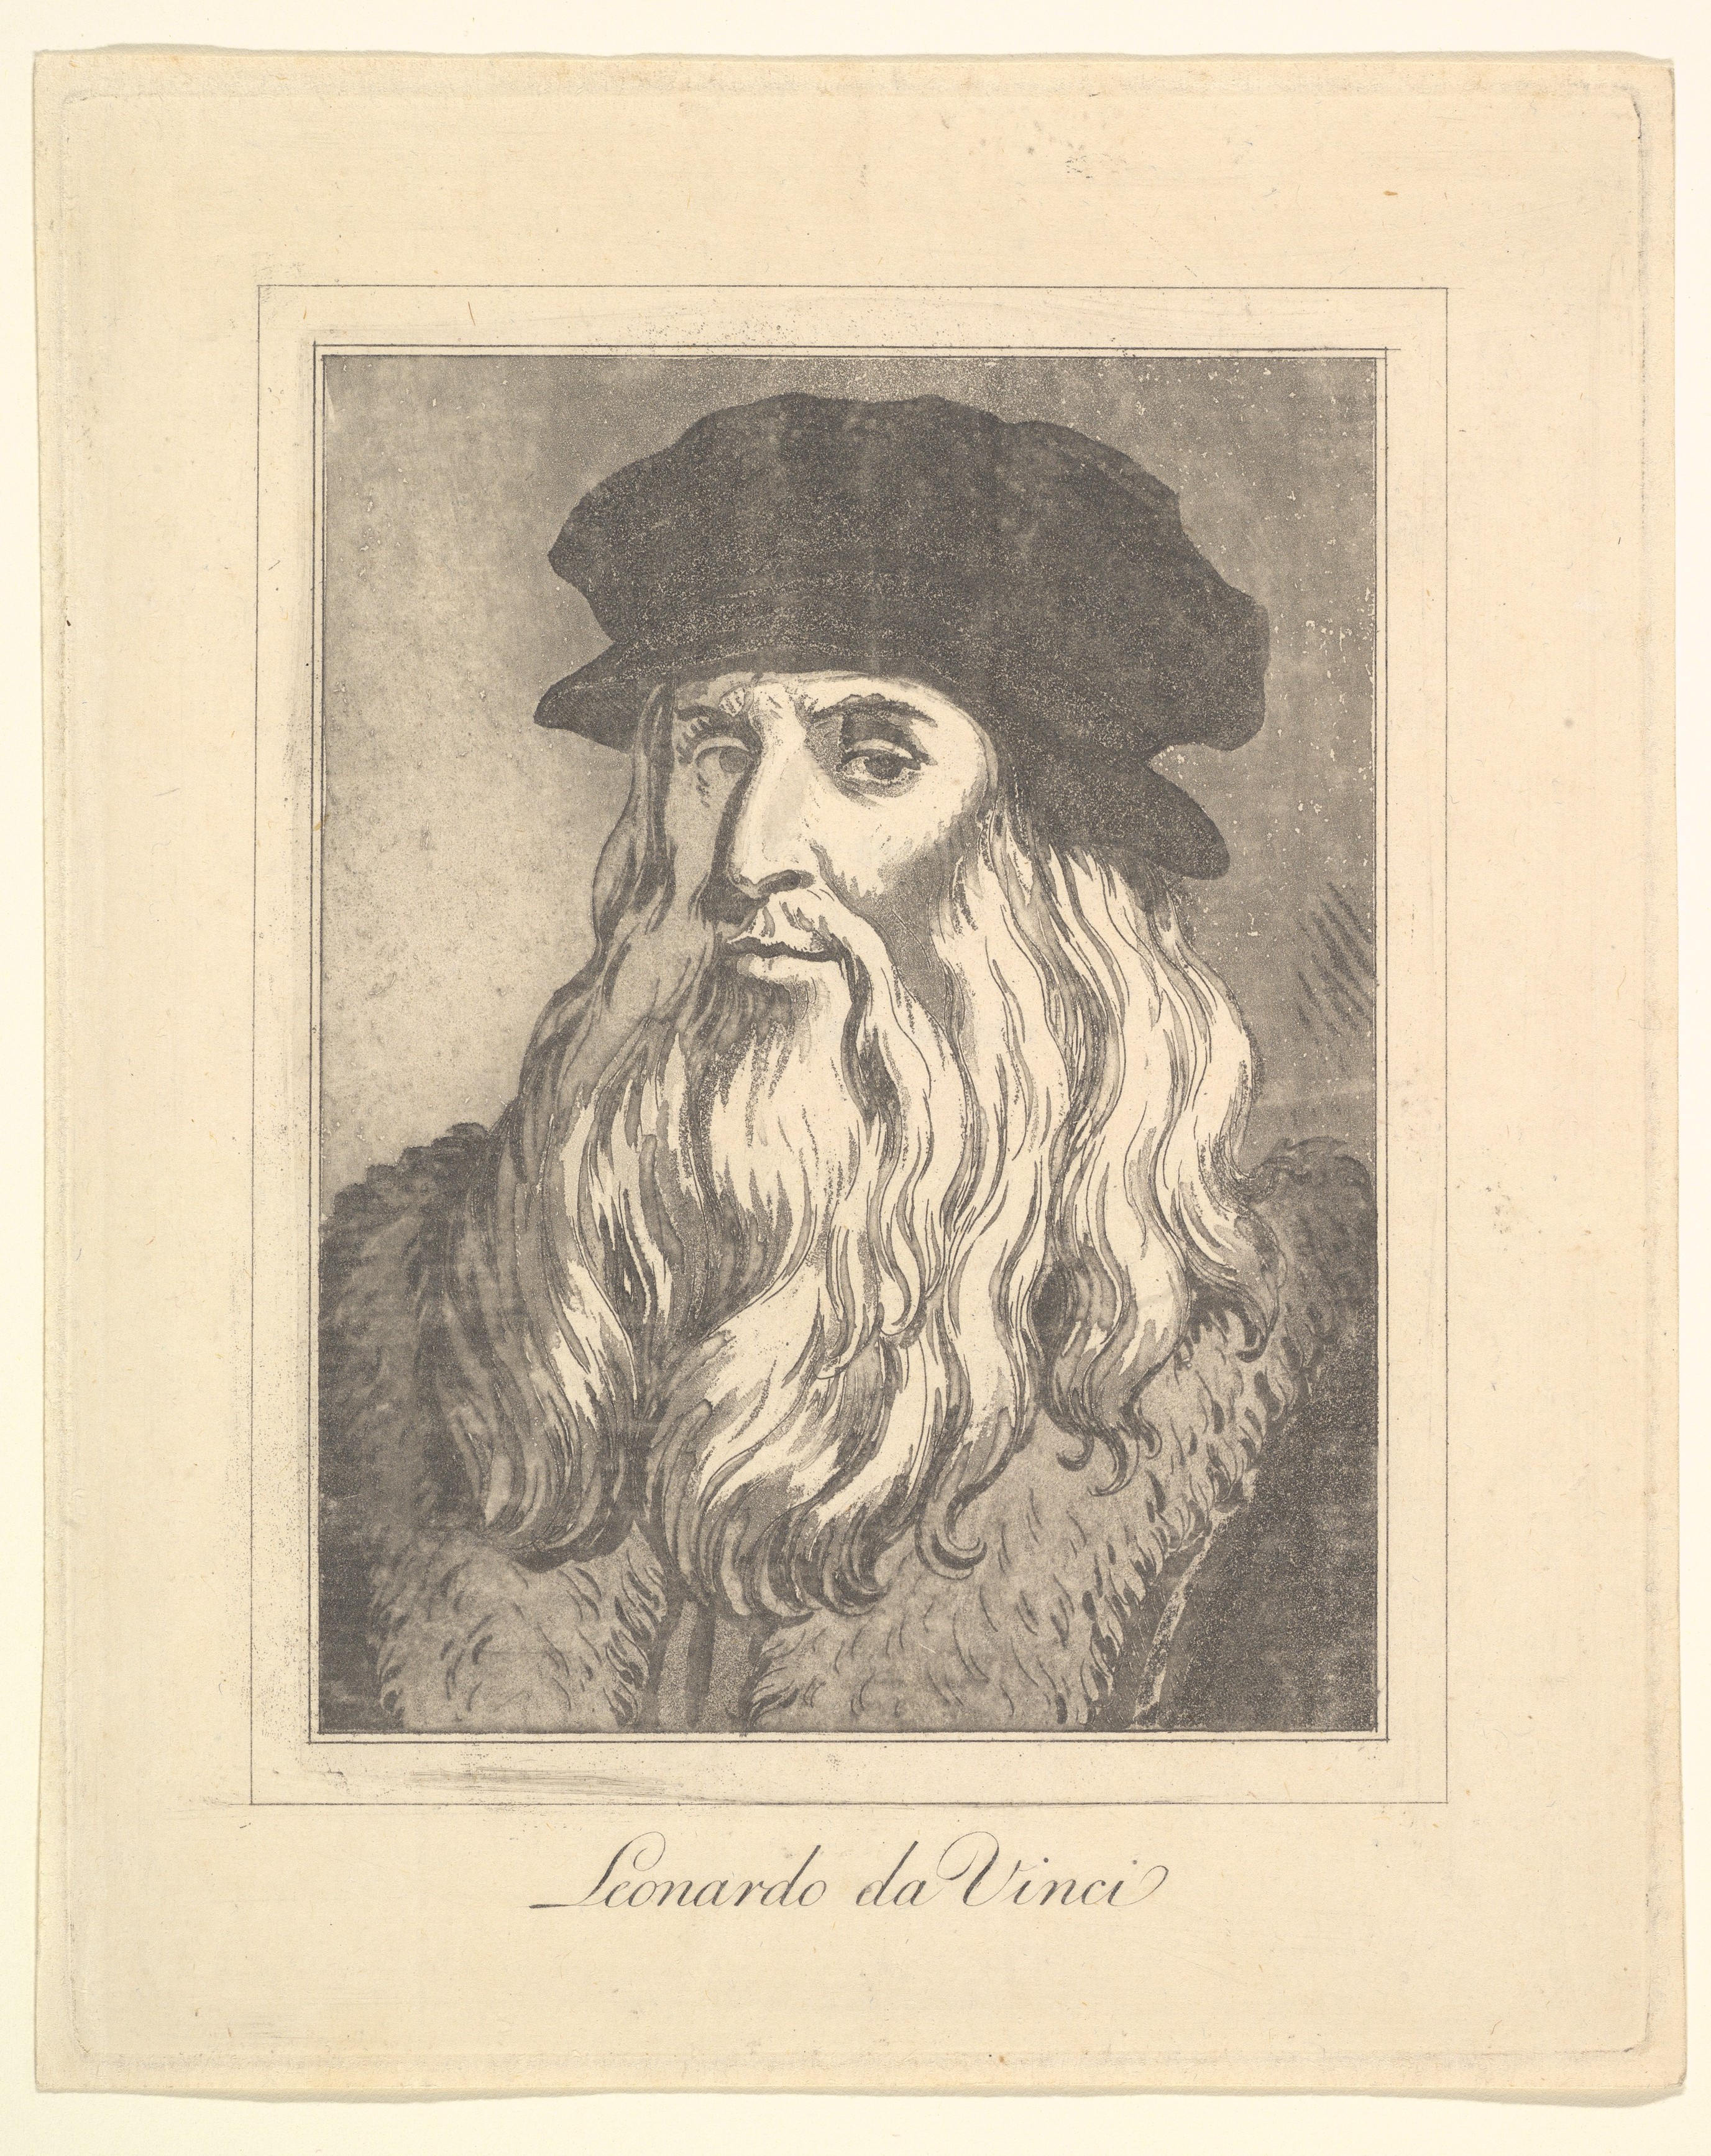 Sale of Leonardo da Vinci sketch sparks legal battle in France